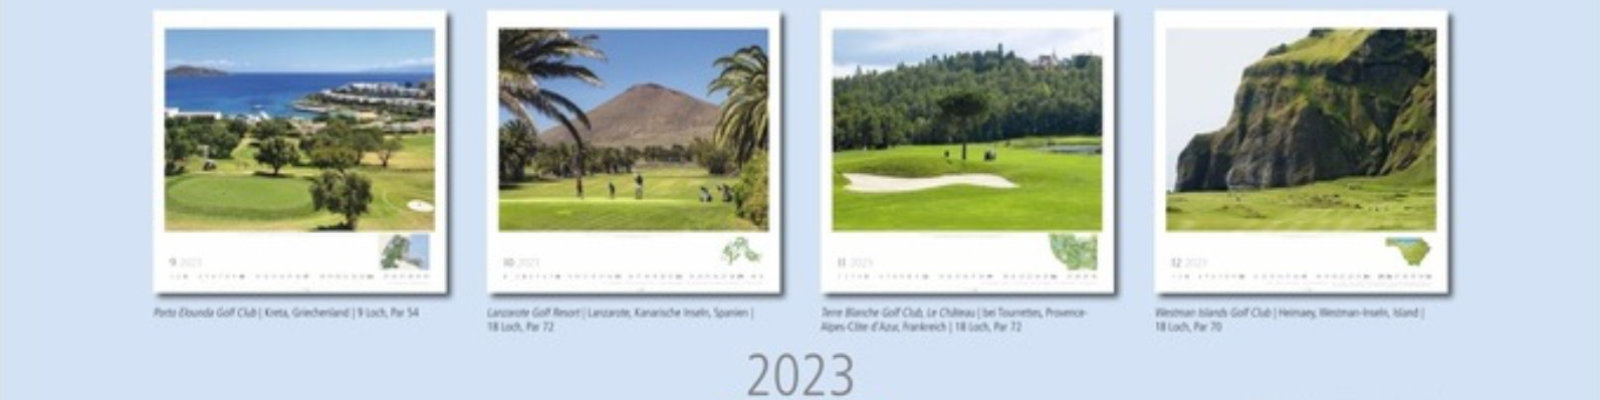 Golfkalender 2023 (photo by Athesia Verlag / Weingarten)